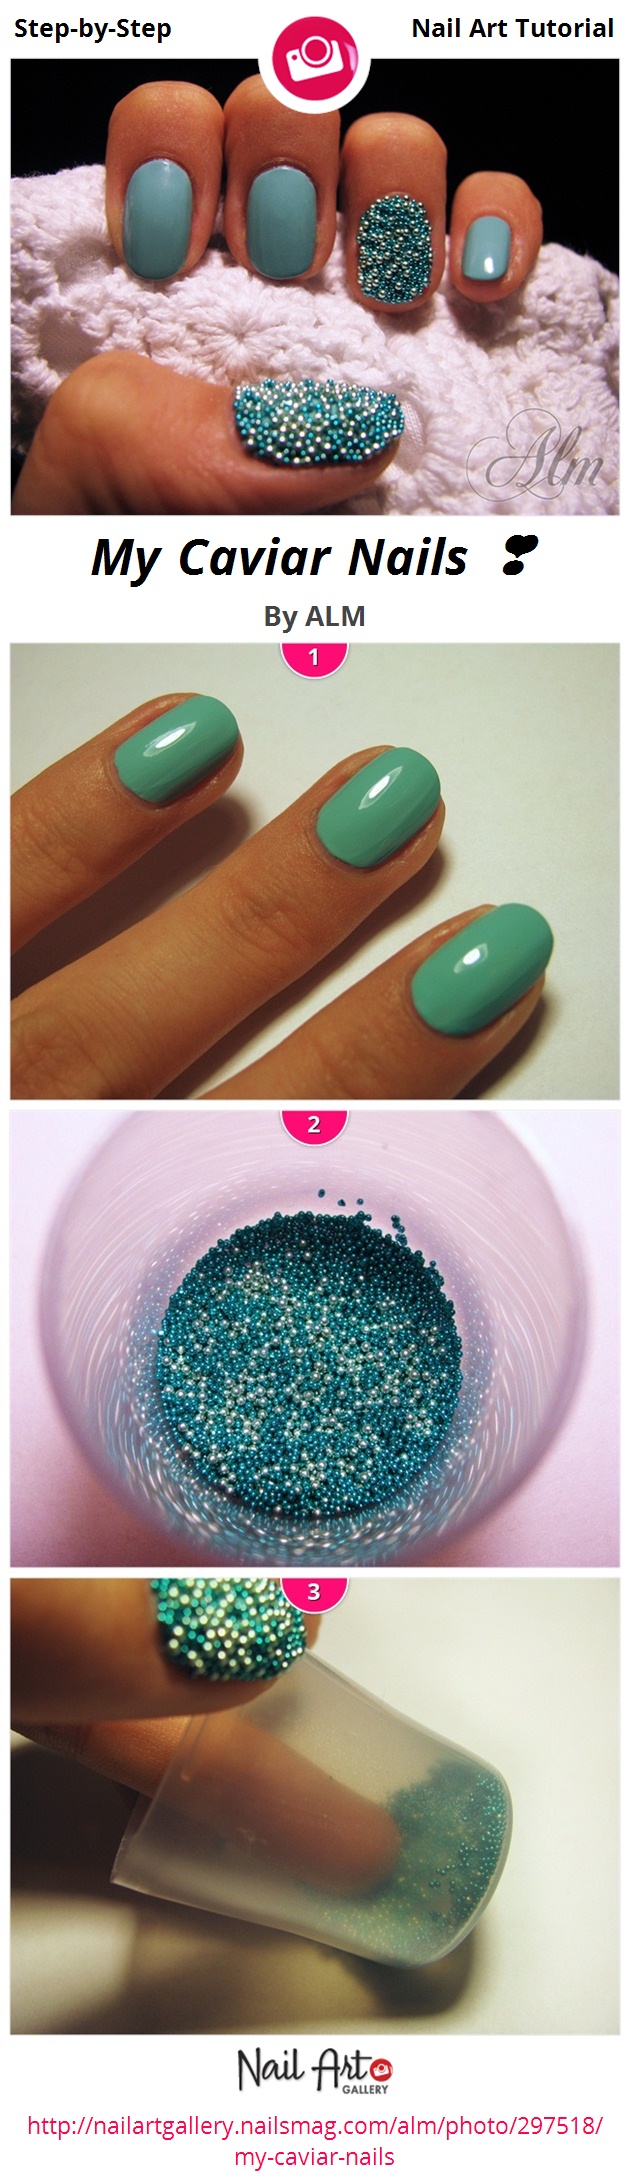 My Caviar Nails ❣ - Nail Art Gallery